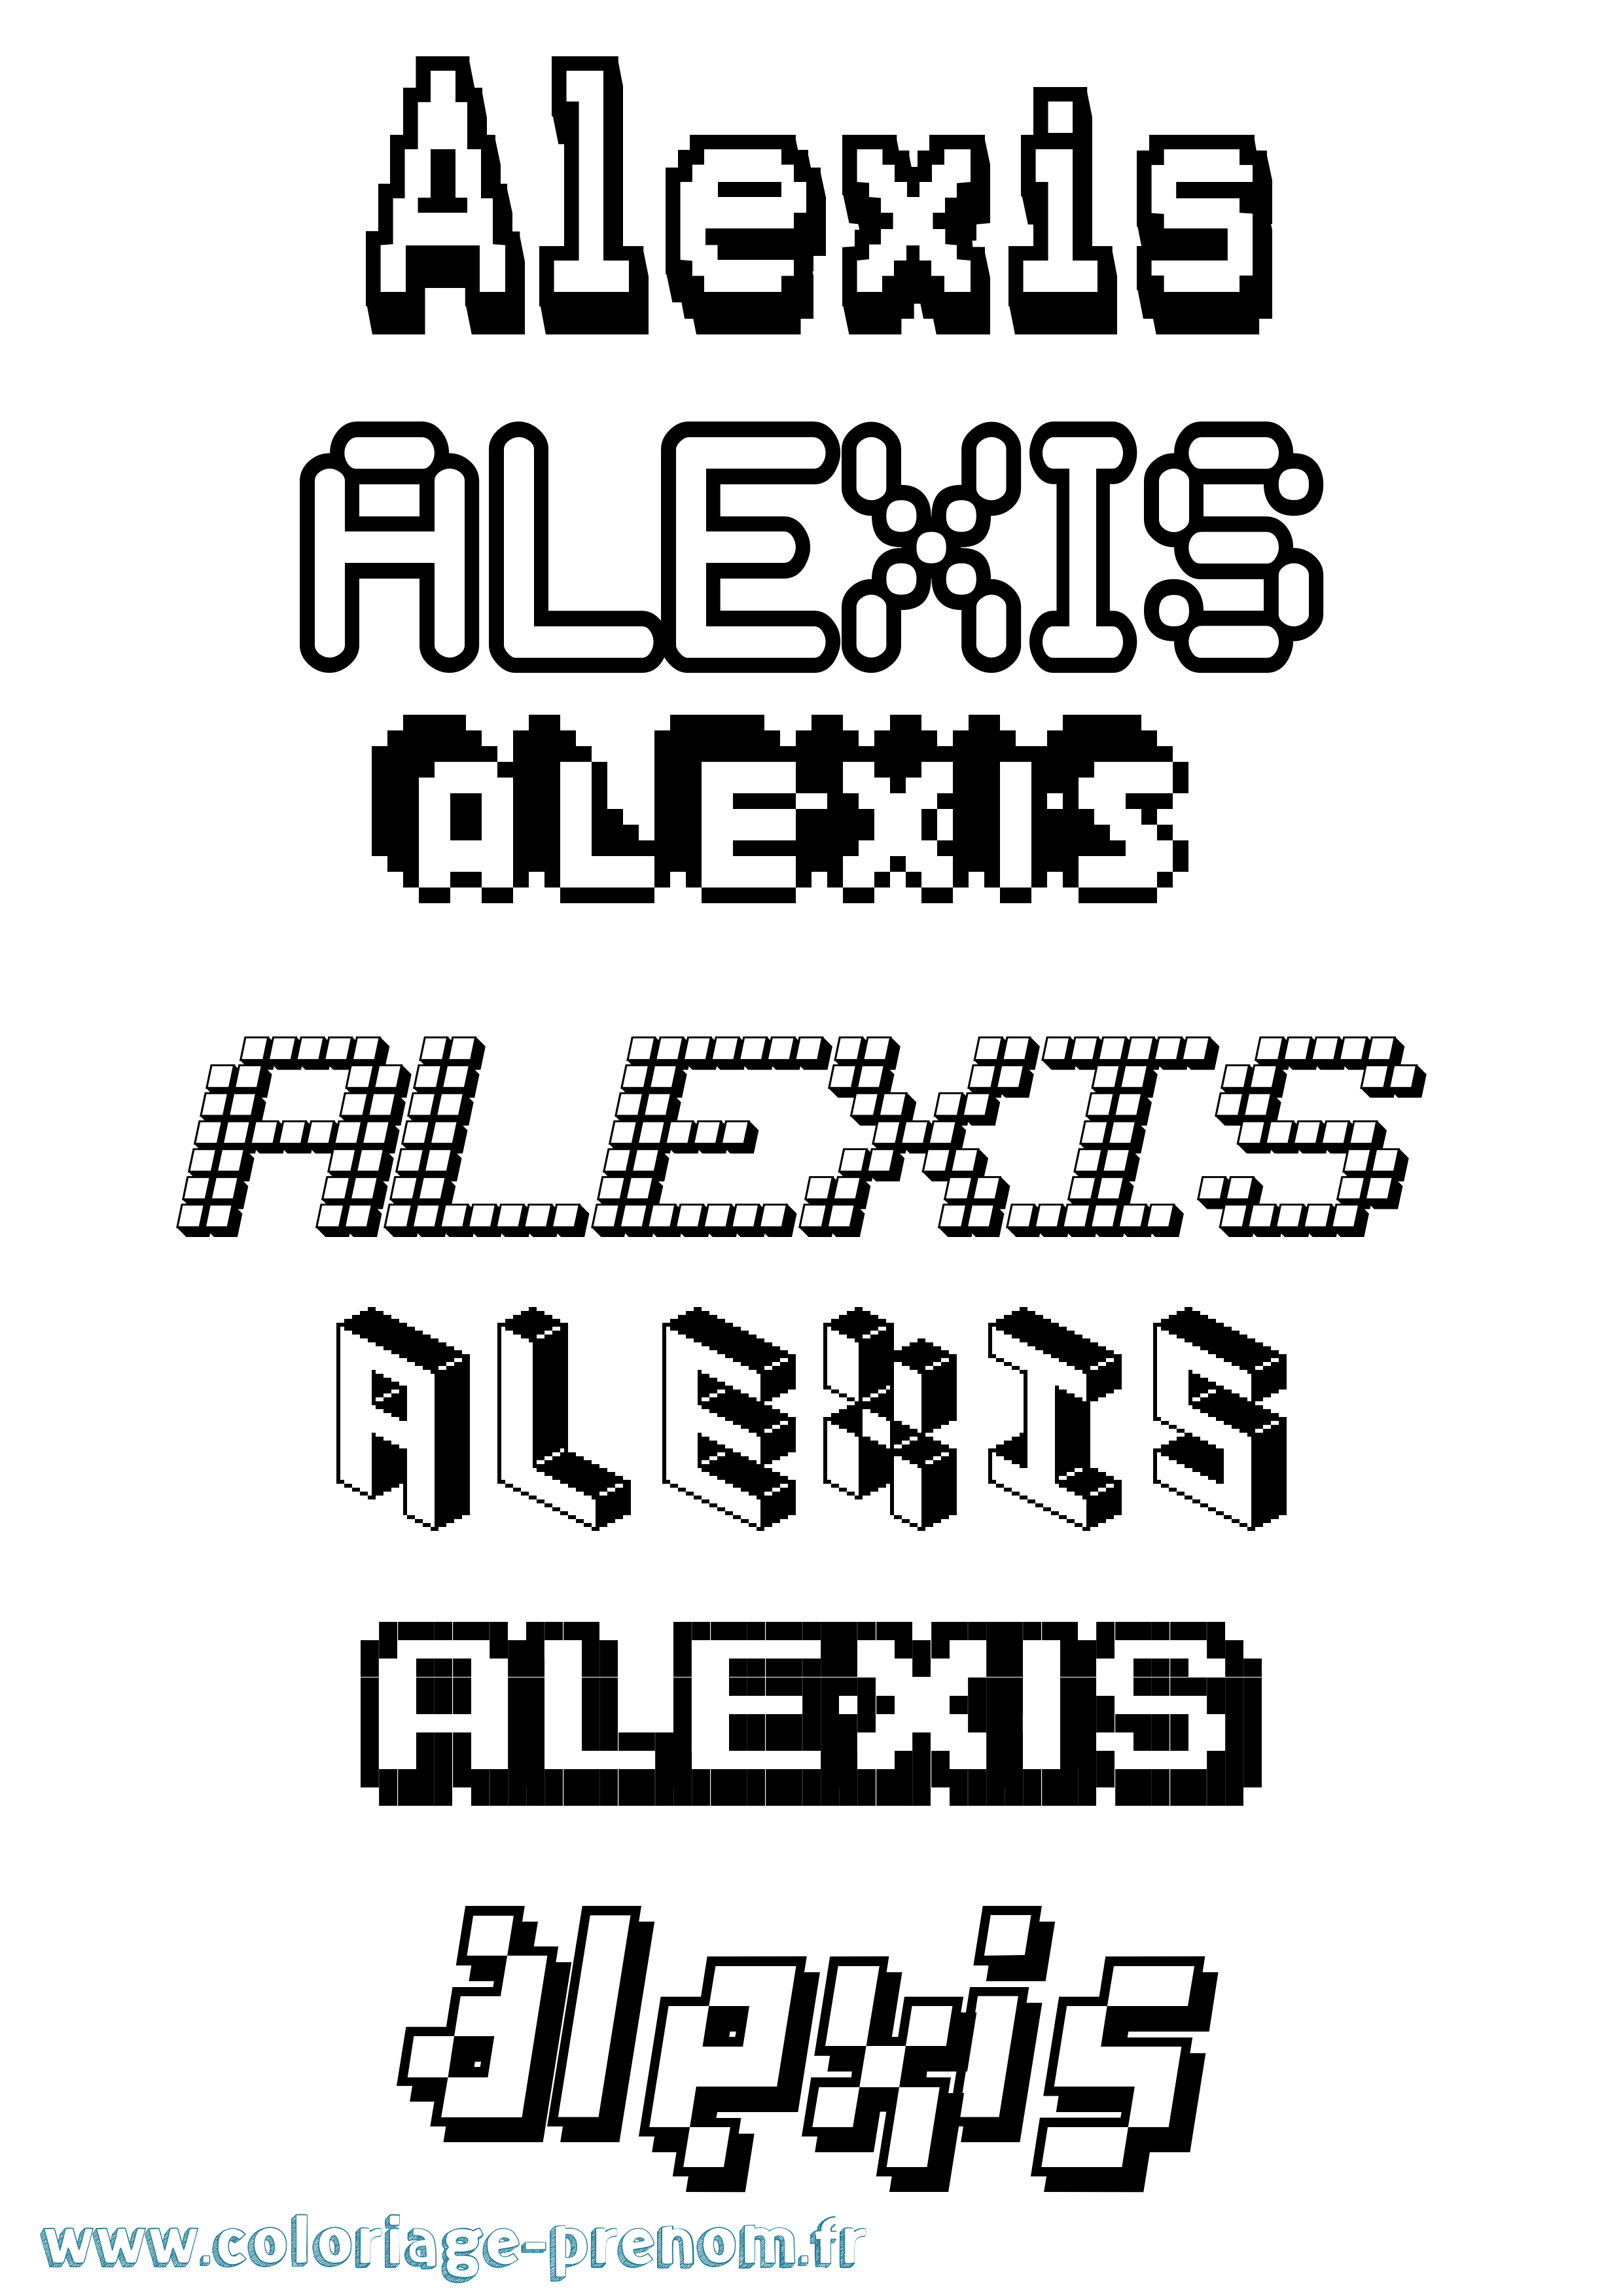 Coloriage prénom Alexis Pixel